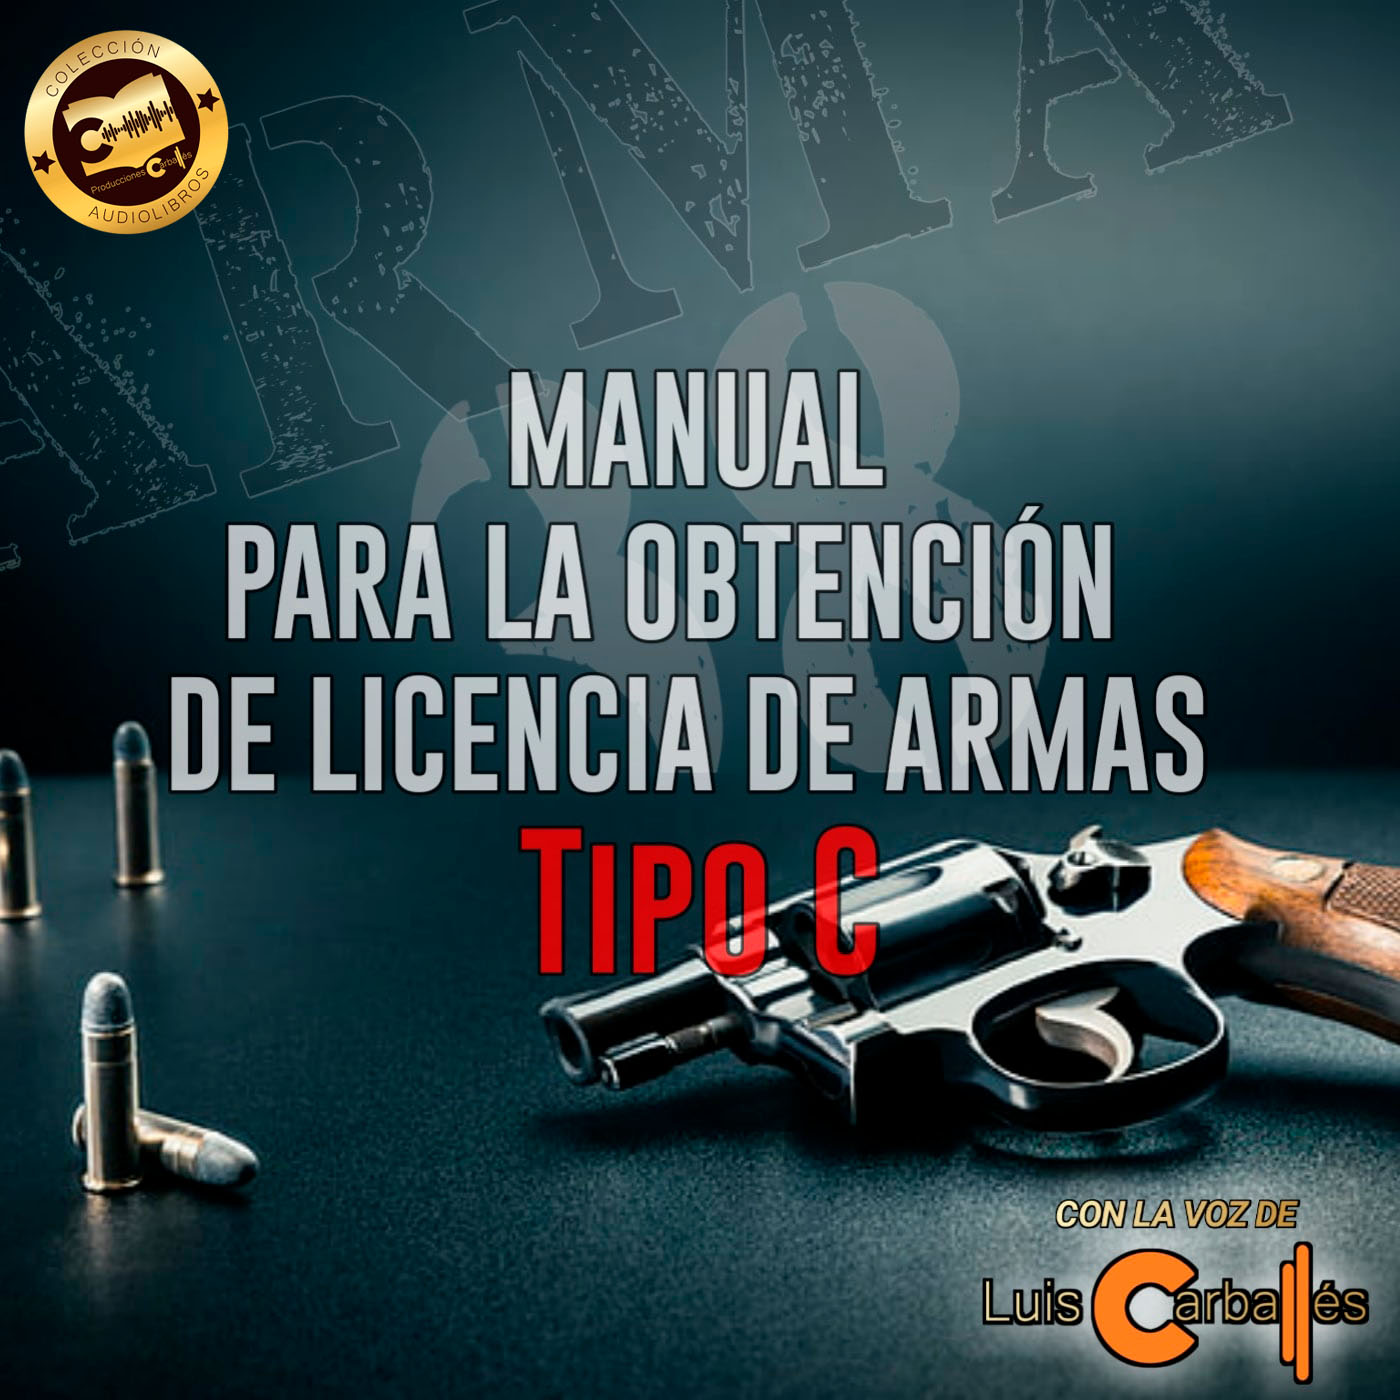 Manual para la obtención de licencia de armas tipo C